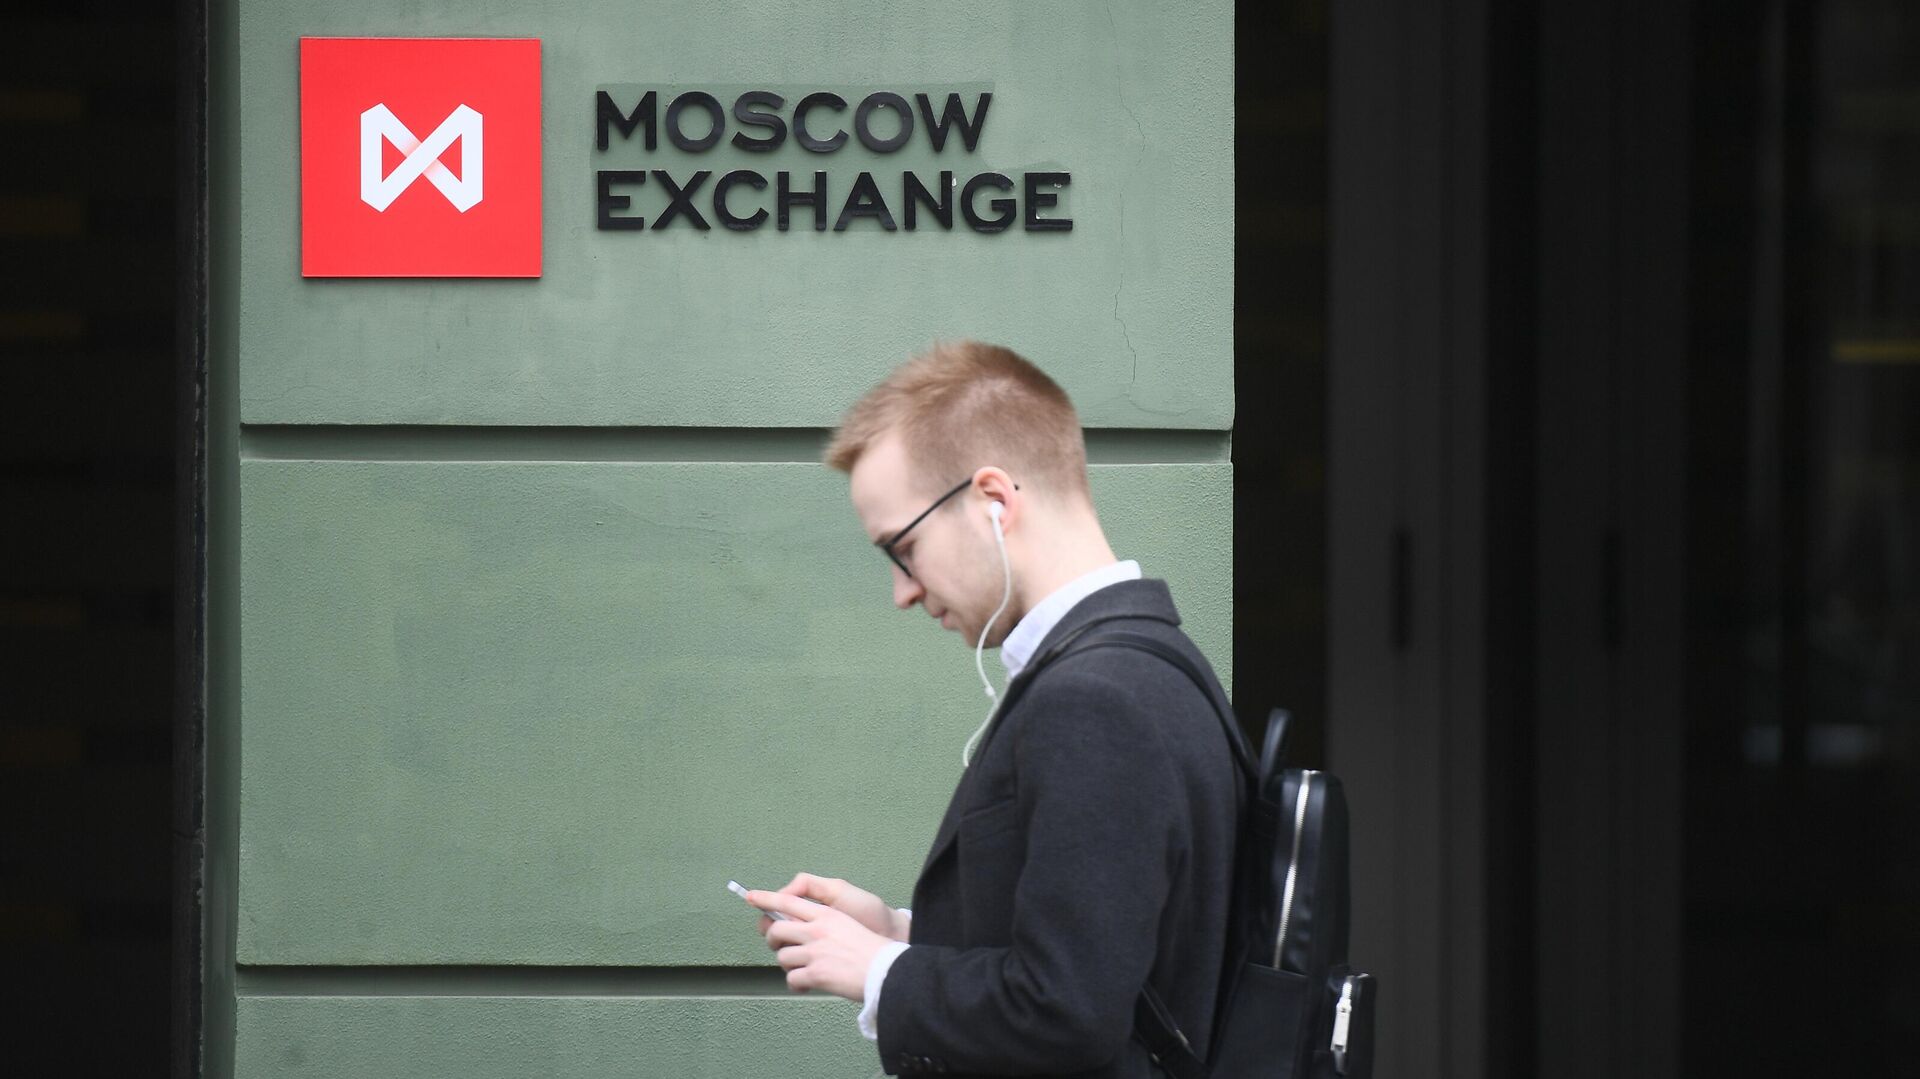 московская биржа маркетплейс финуслуги